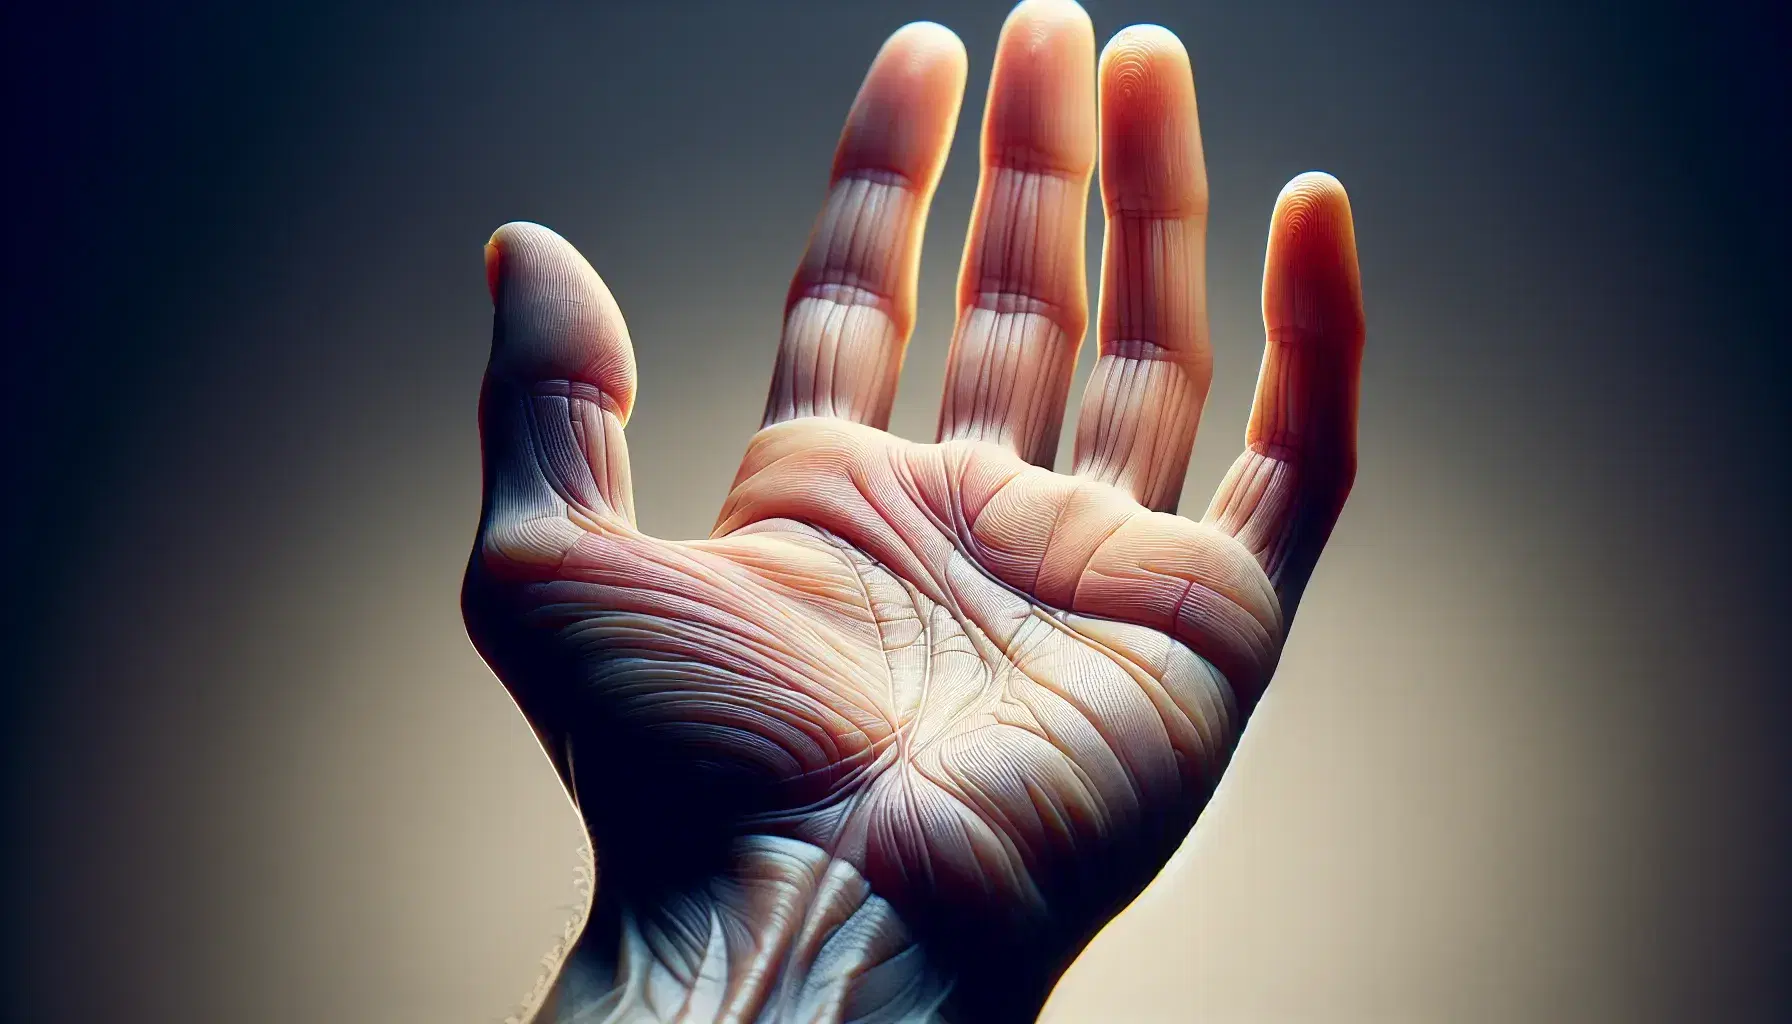 Mano umana aperta con palmo in primo piano che mostra dettagli della pelle, linee e impronte digitali, in sfondo neutro sfocato.